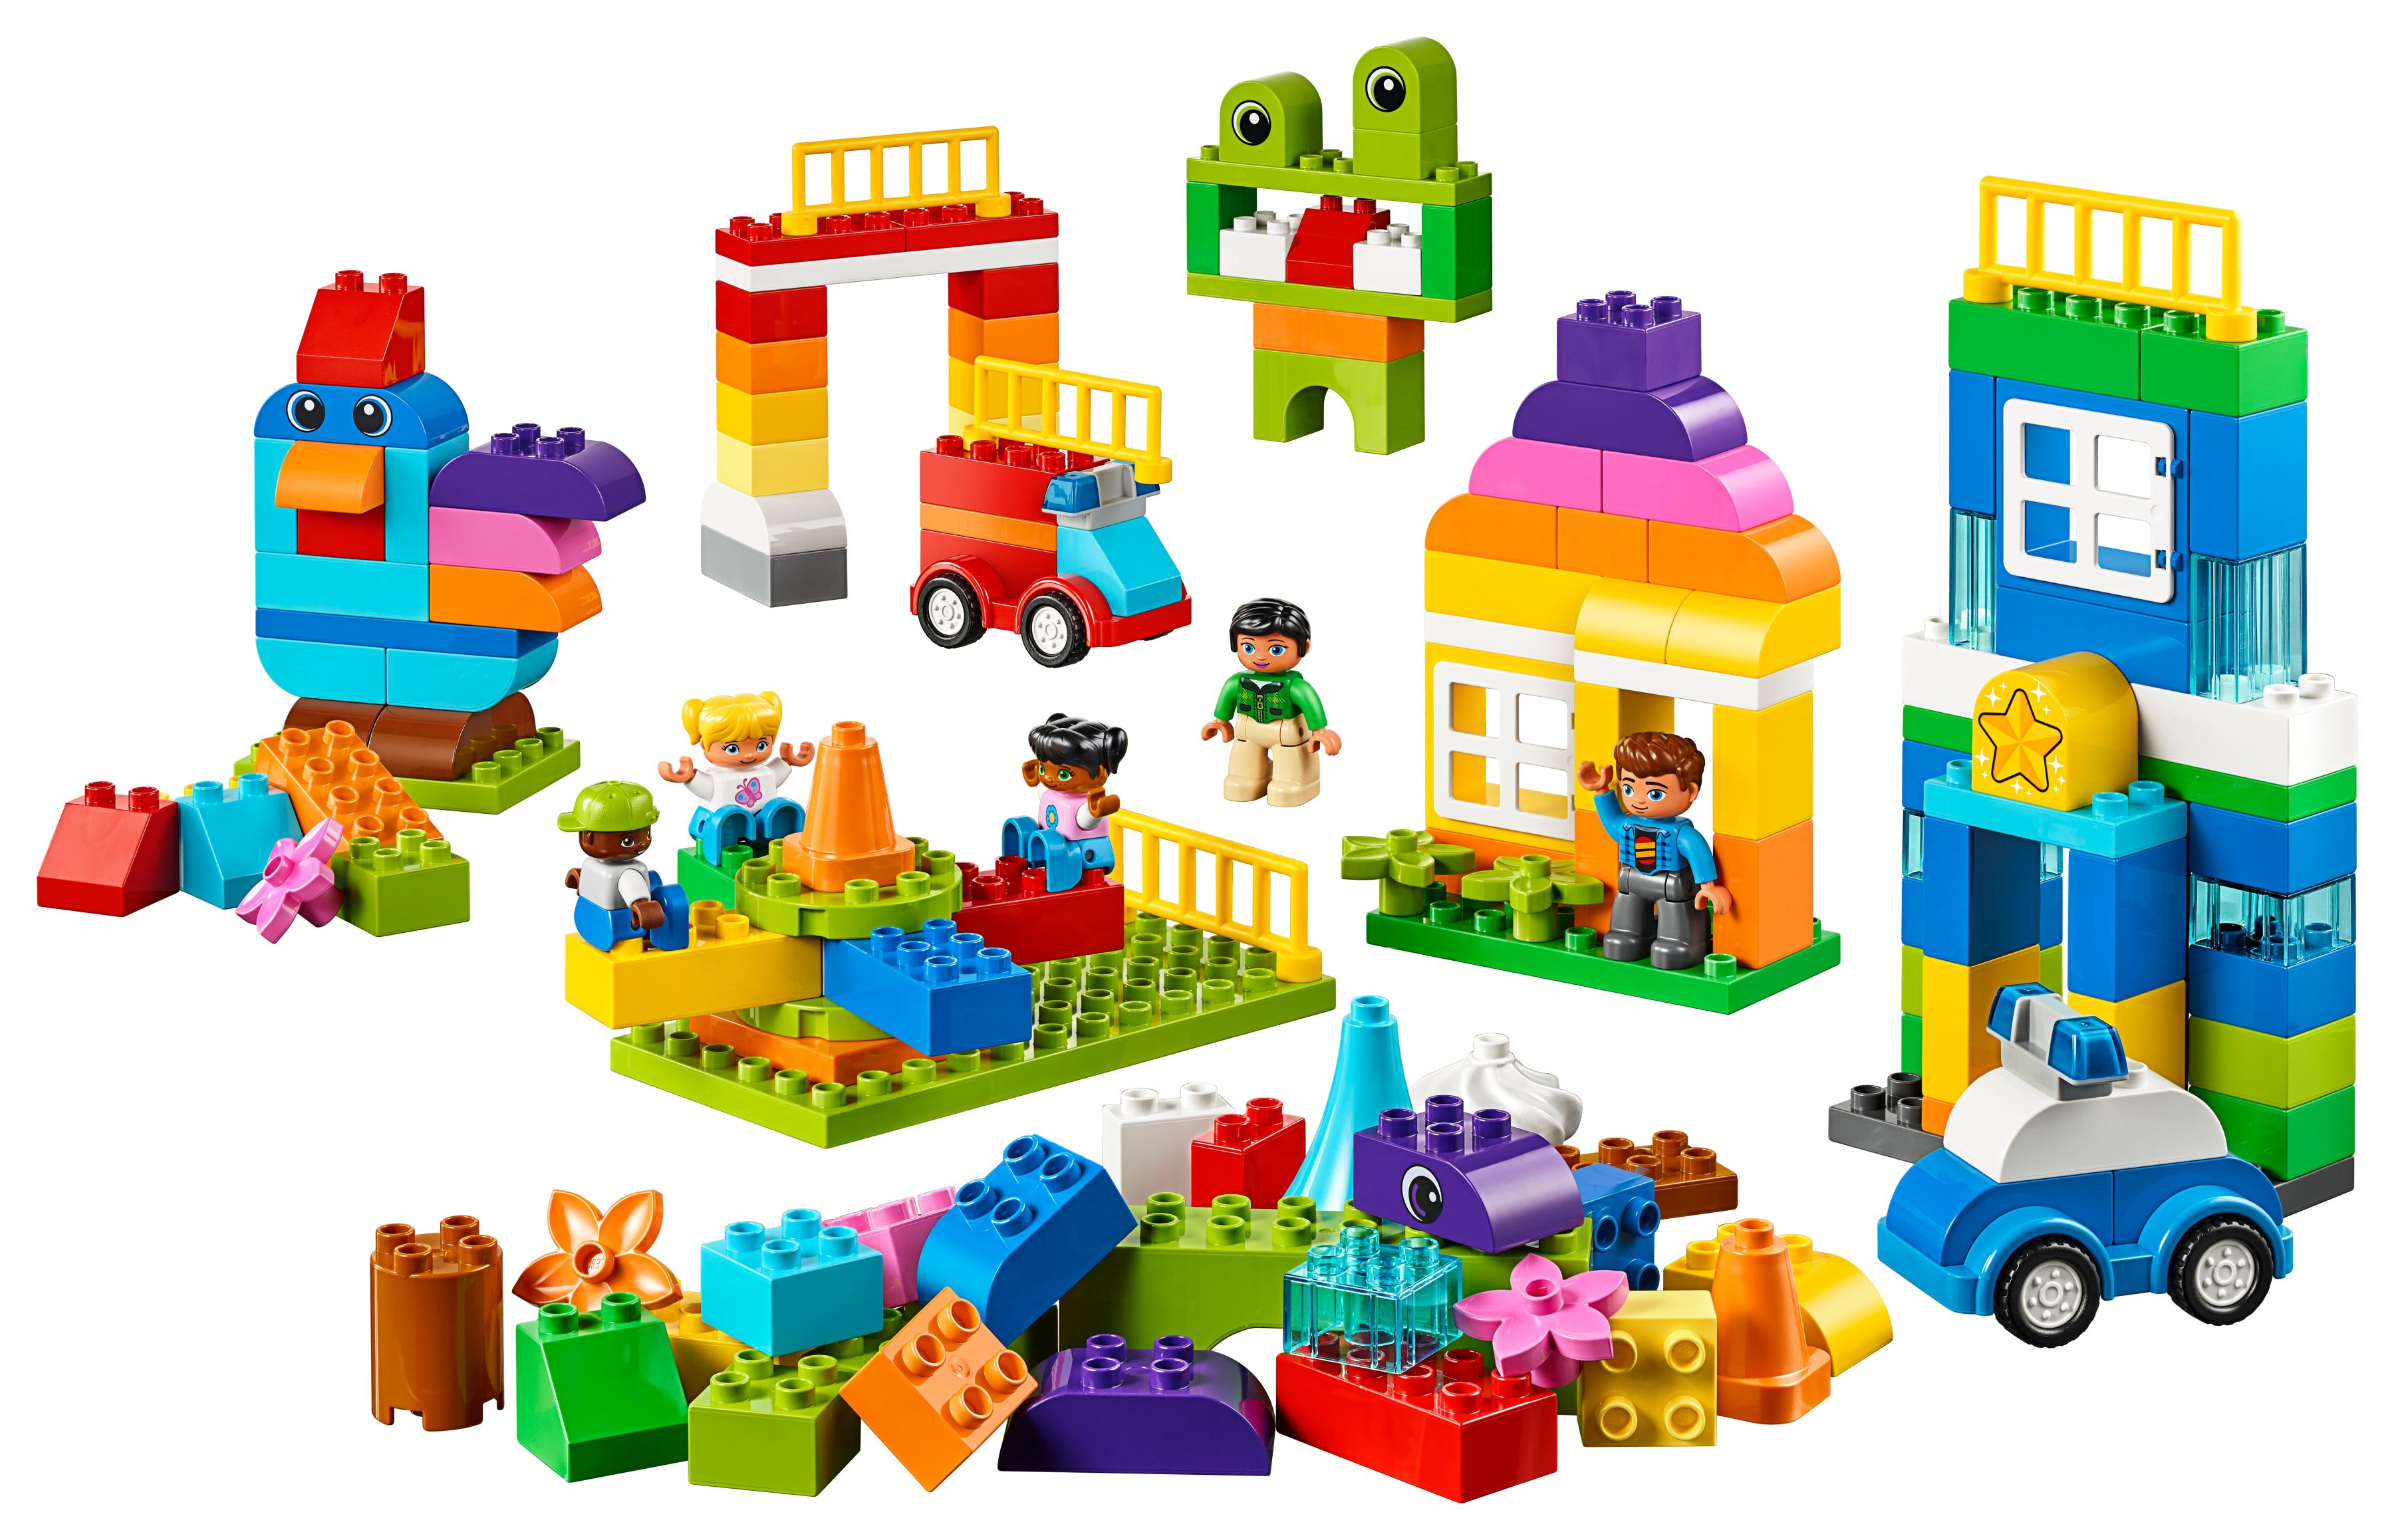 LEGO Education 45028 Meine riesige Welt LEGO_45028_alt2.jpg